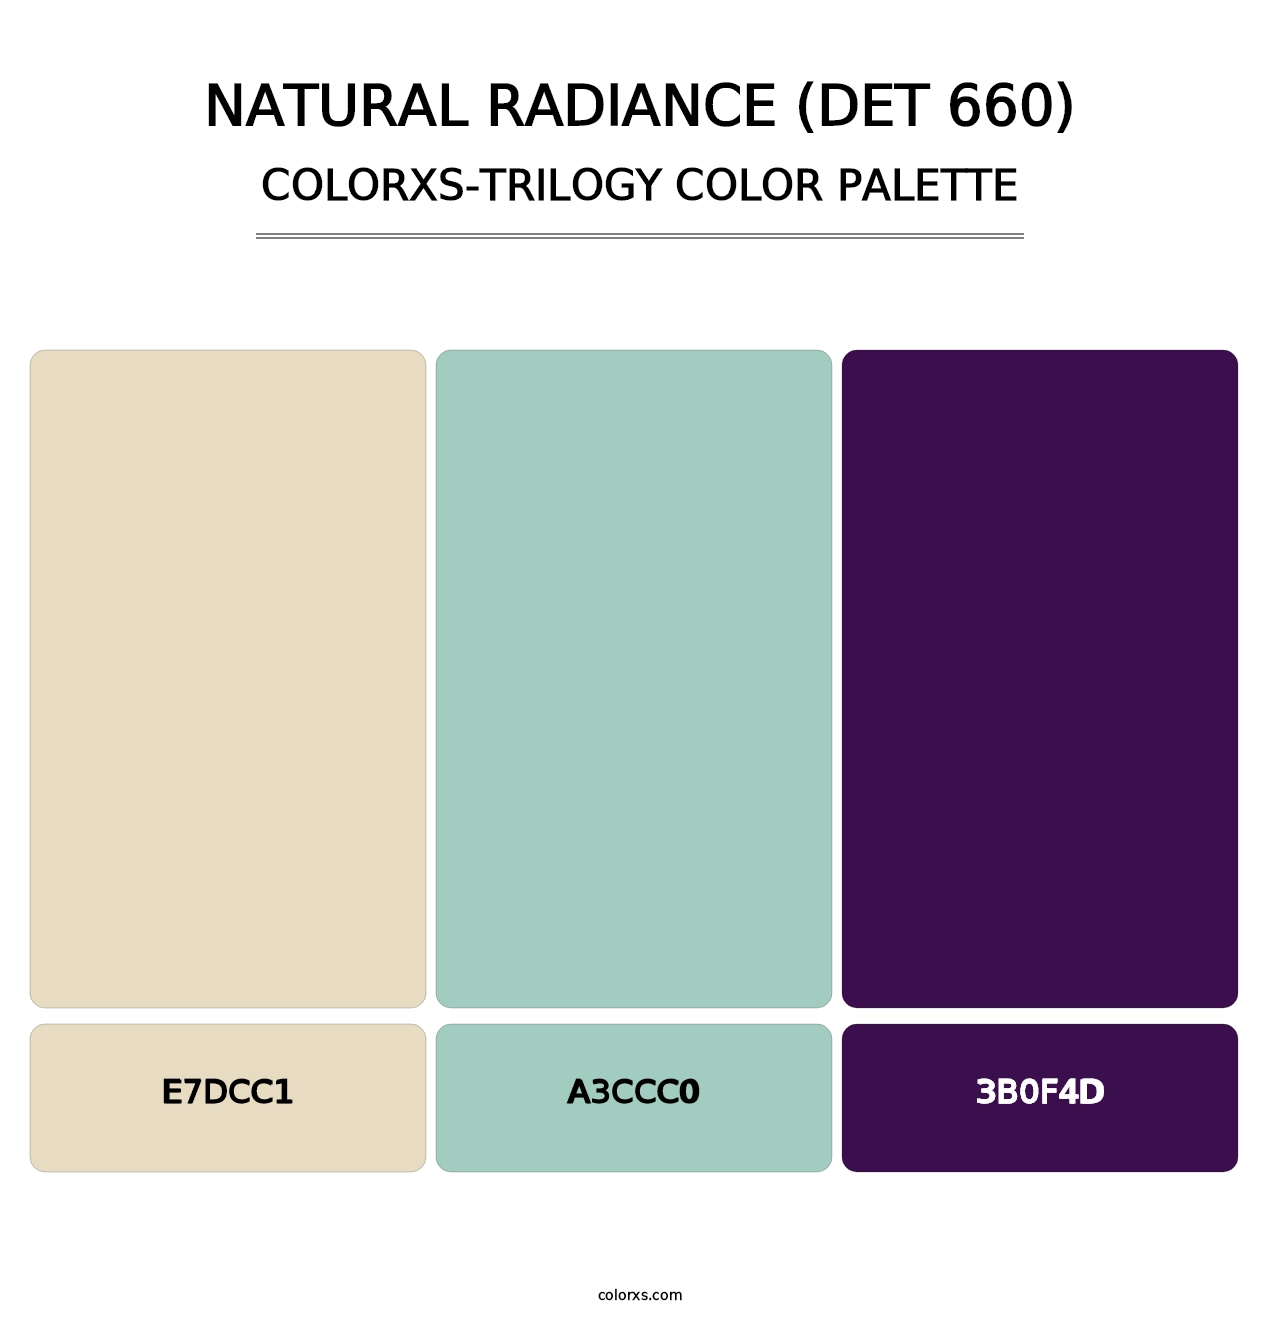 Natural Radiance (DET 660) - Colorxs Trilogy Palette